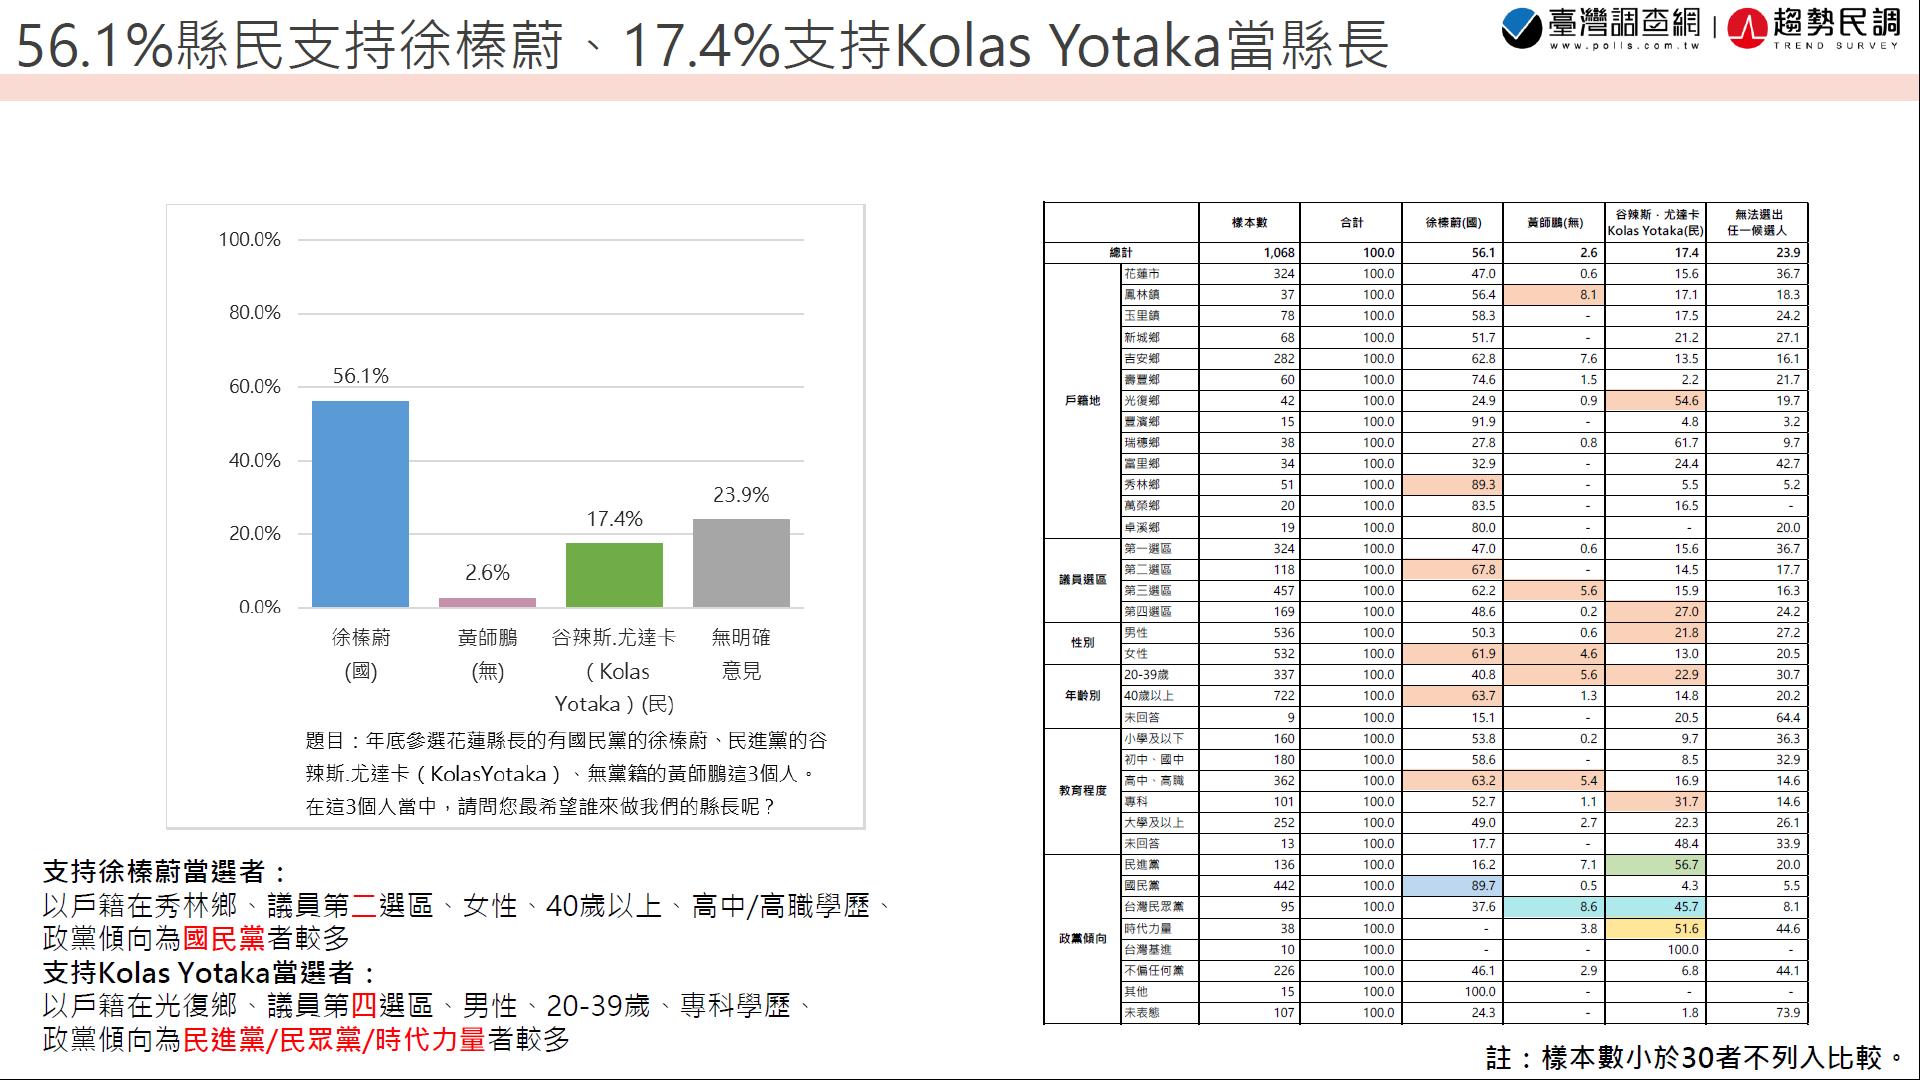 【匯流民調2022縣市長系列3-1】徐榛蔚獲花蓮縣民56.1%支持度 大贏Kolas Yotaka的17.4% 兩人差距38.7個百分點